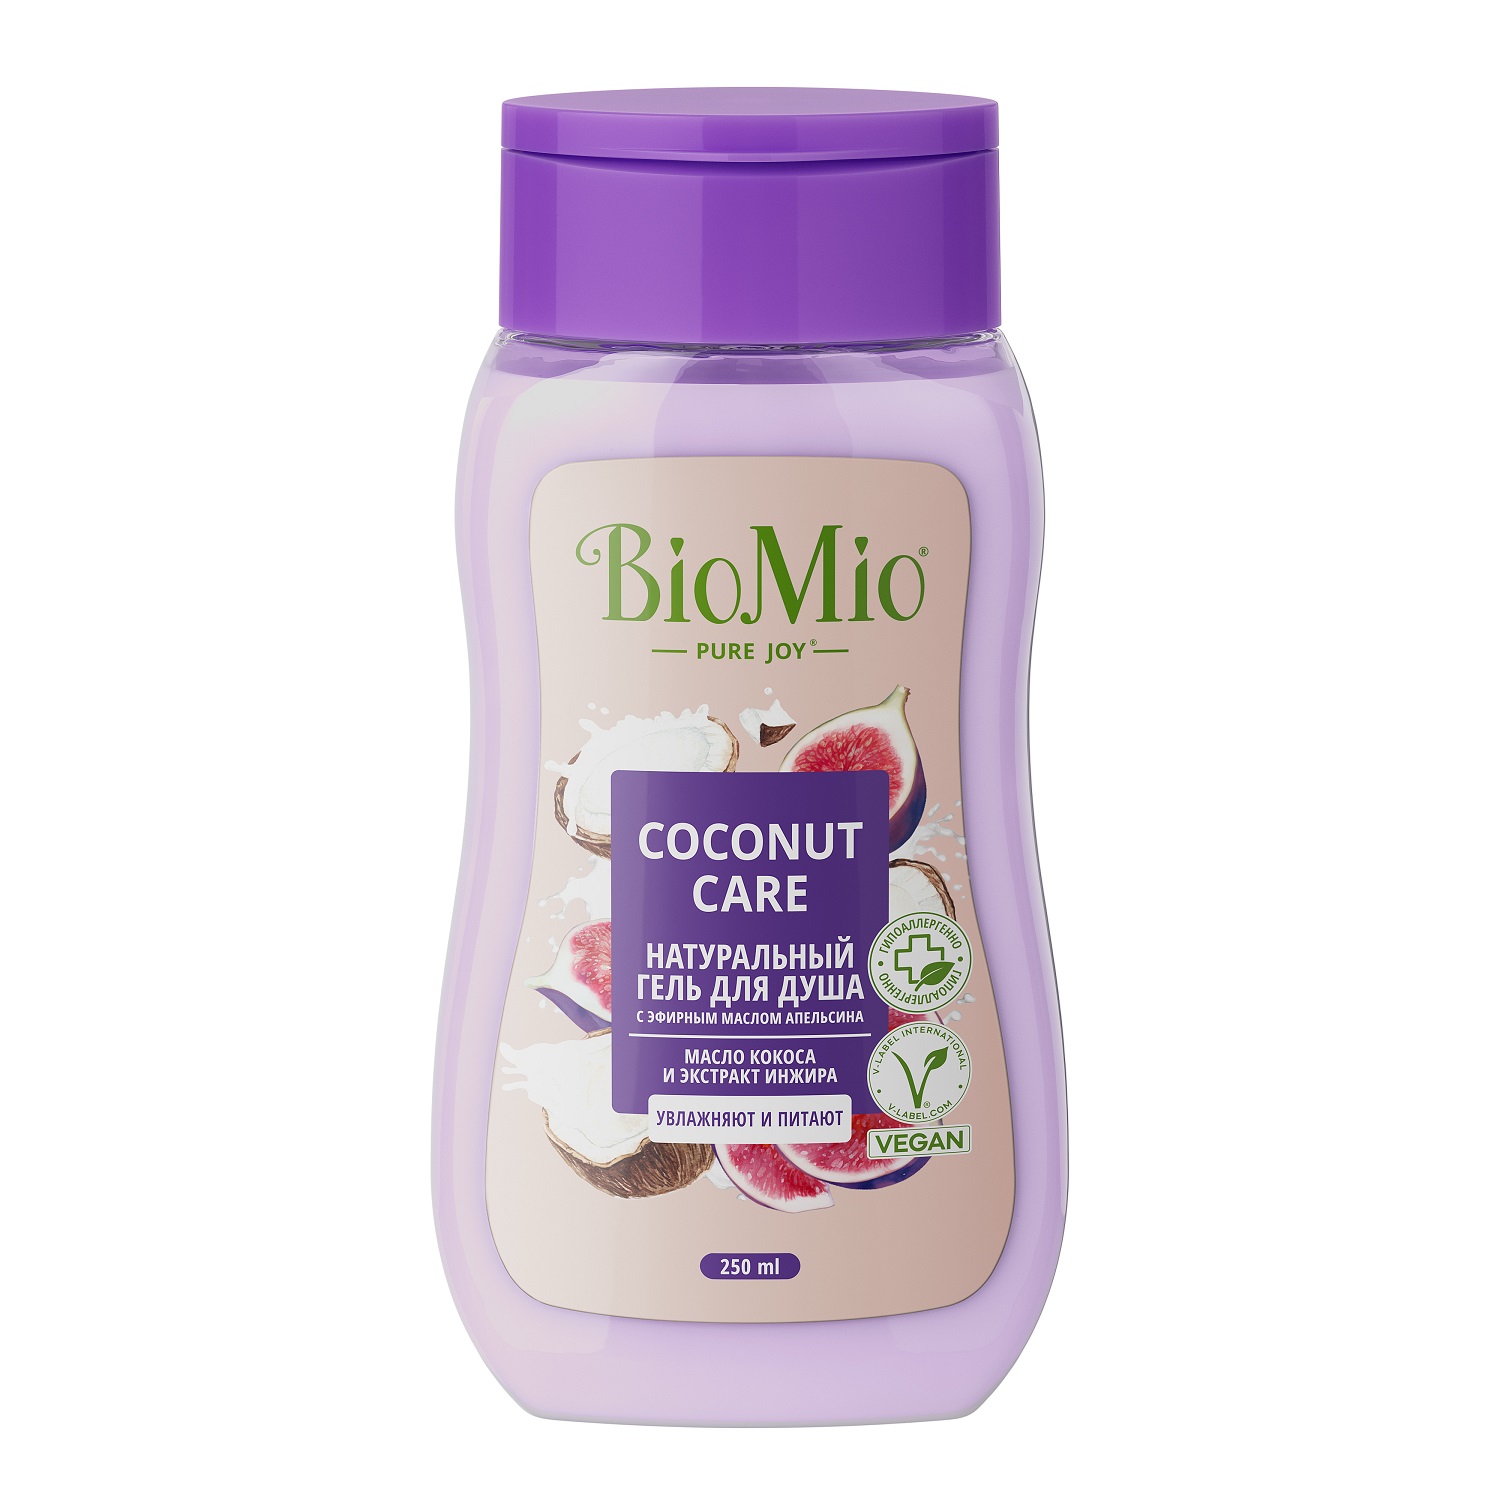 BioMio Гель для душа с экстрактом инжира и маслом кокоса Coconut Care для всей семьи 14+, 250 мл (BioMio, Для ванны и душа) ухаживающий крем гель для душа для нормальной и сухой кожи caring